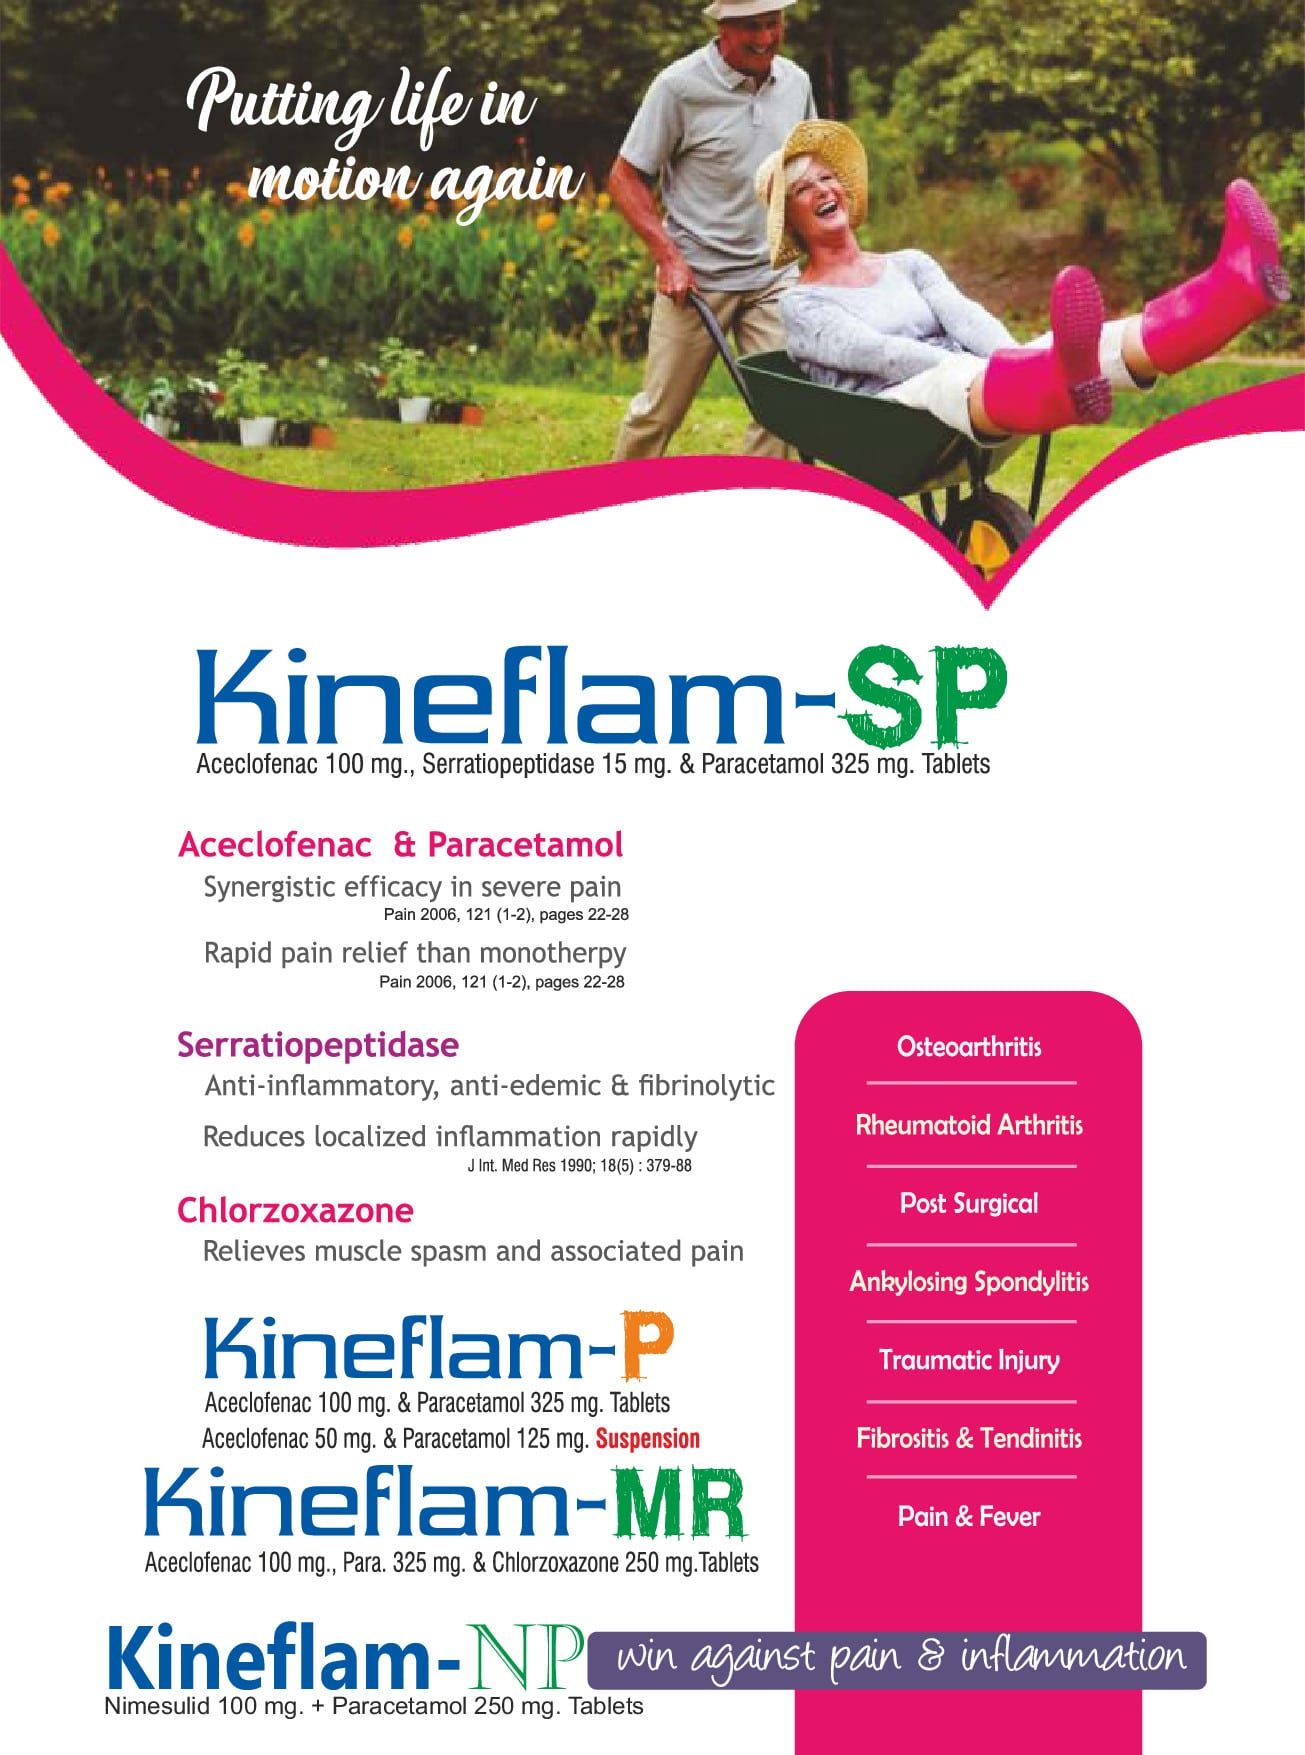 Kineflam-SP